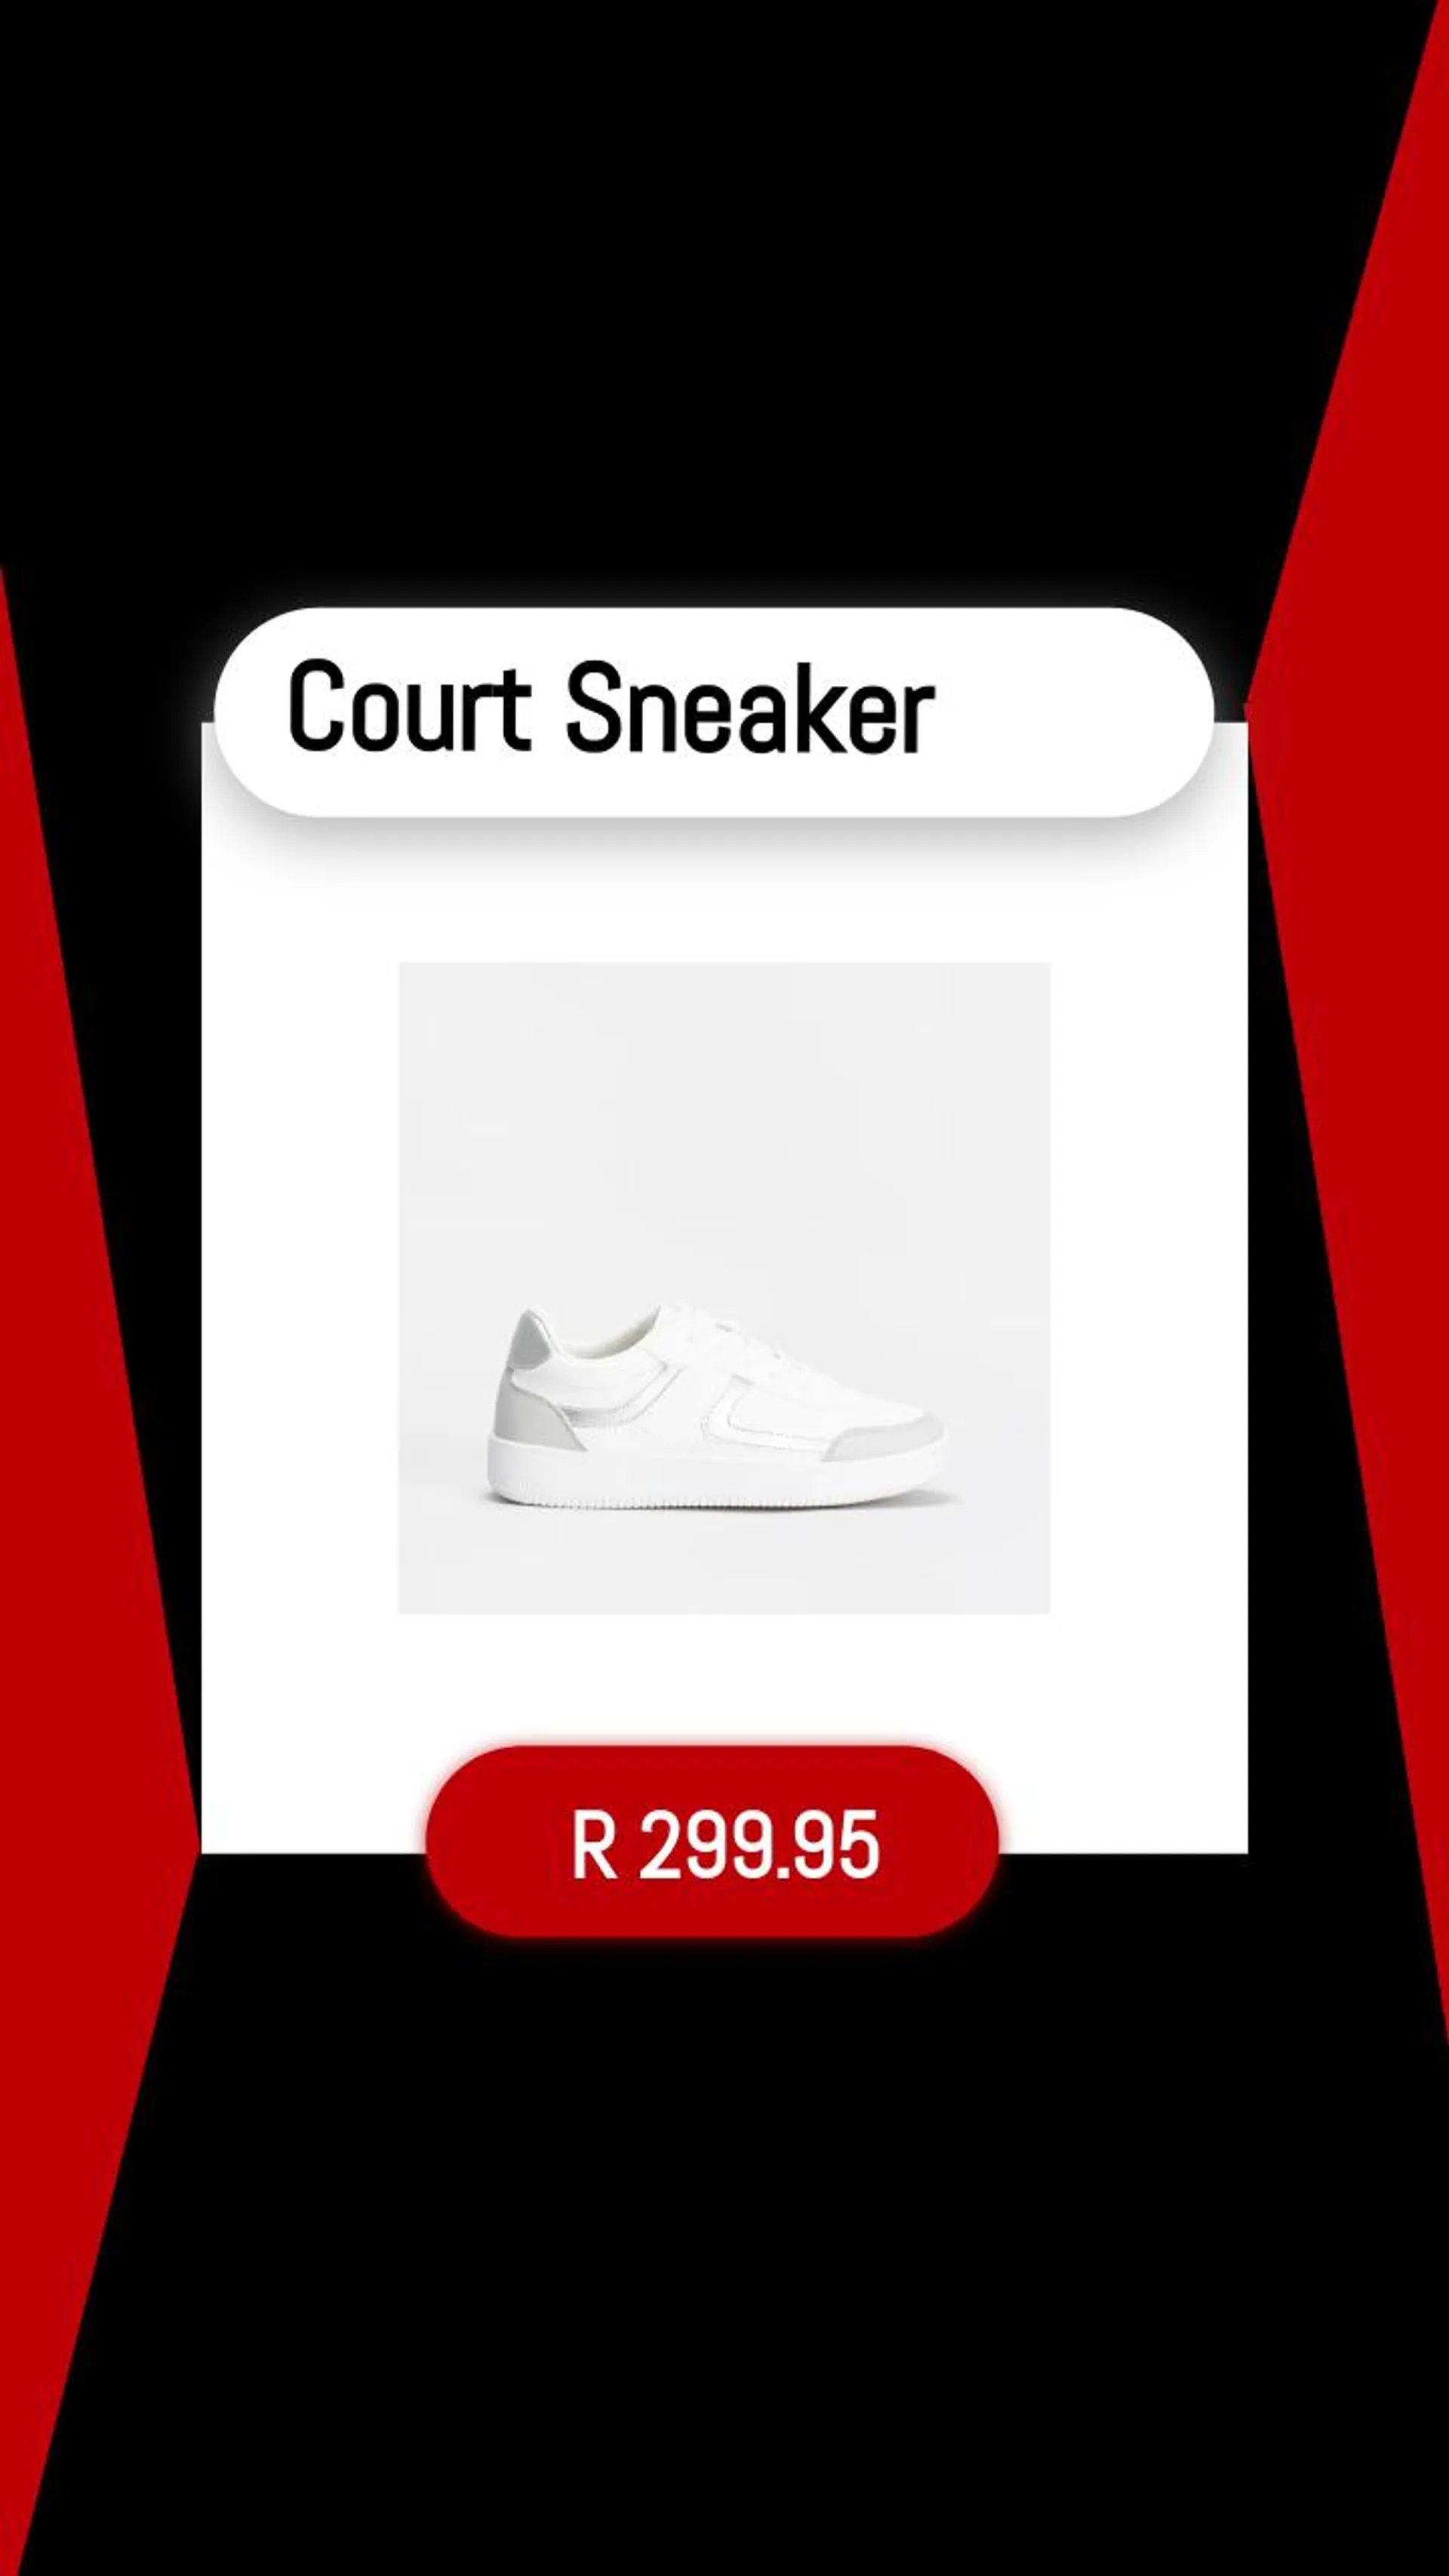 Court Sneaker